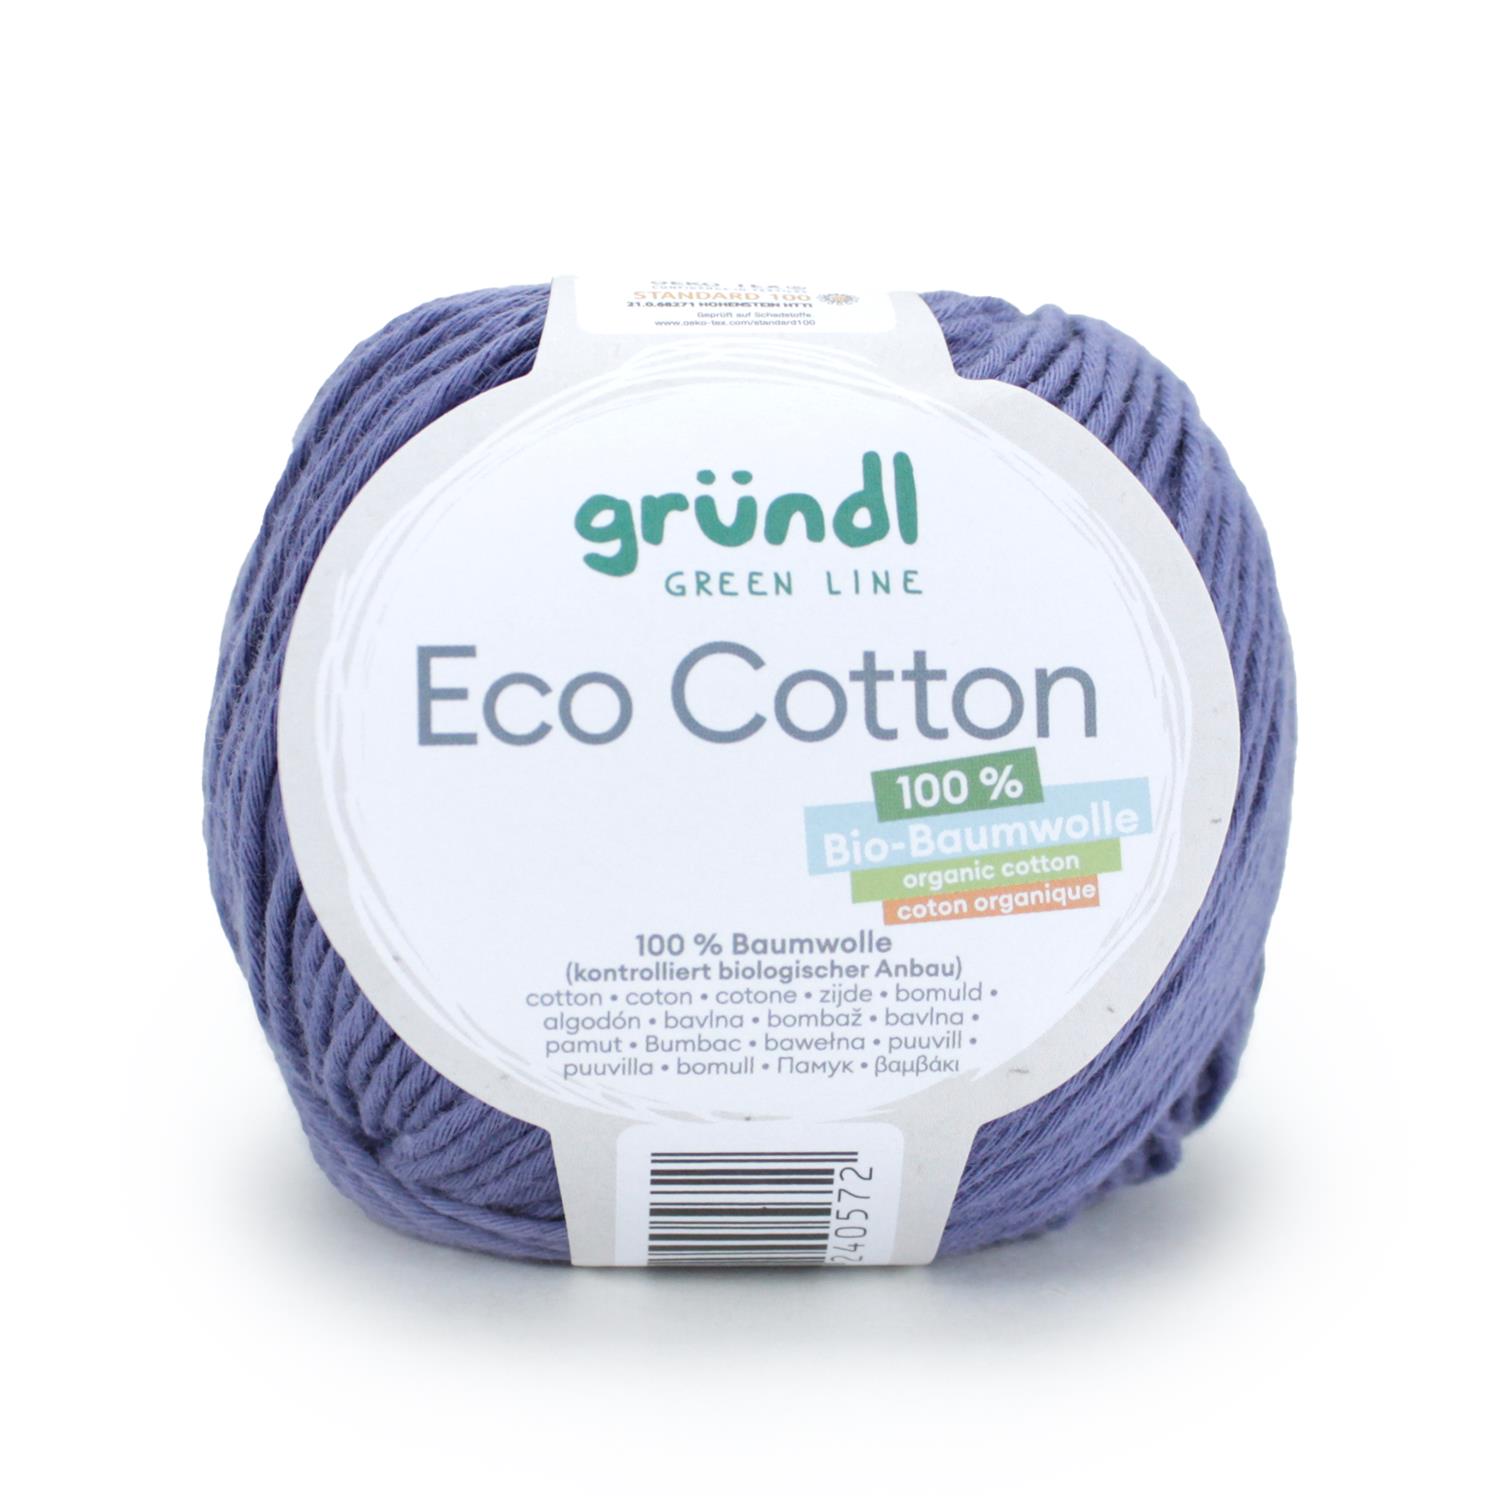 Gründl Eco Cotton (50g/105m) 100% Baumwolle